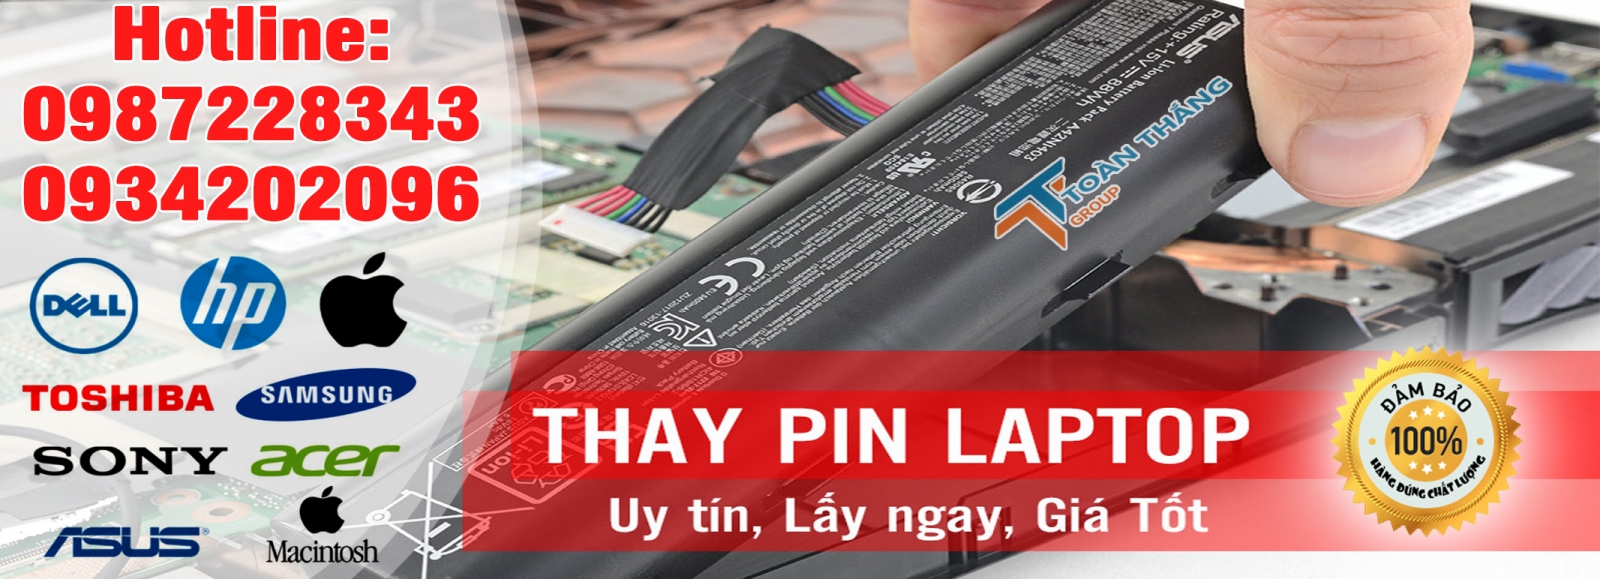 Công Ty Dịch Vụ Thay Pin Laptop Tận Nơi Quận Tân Phú Uy Tín Chính Hãng